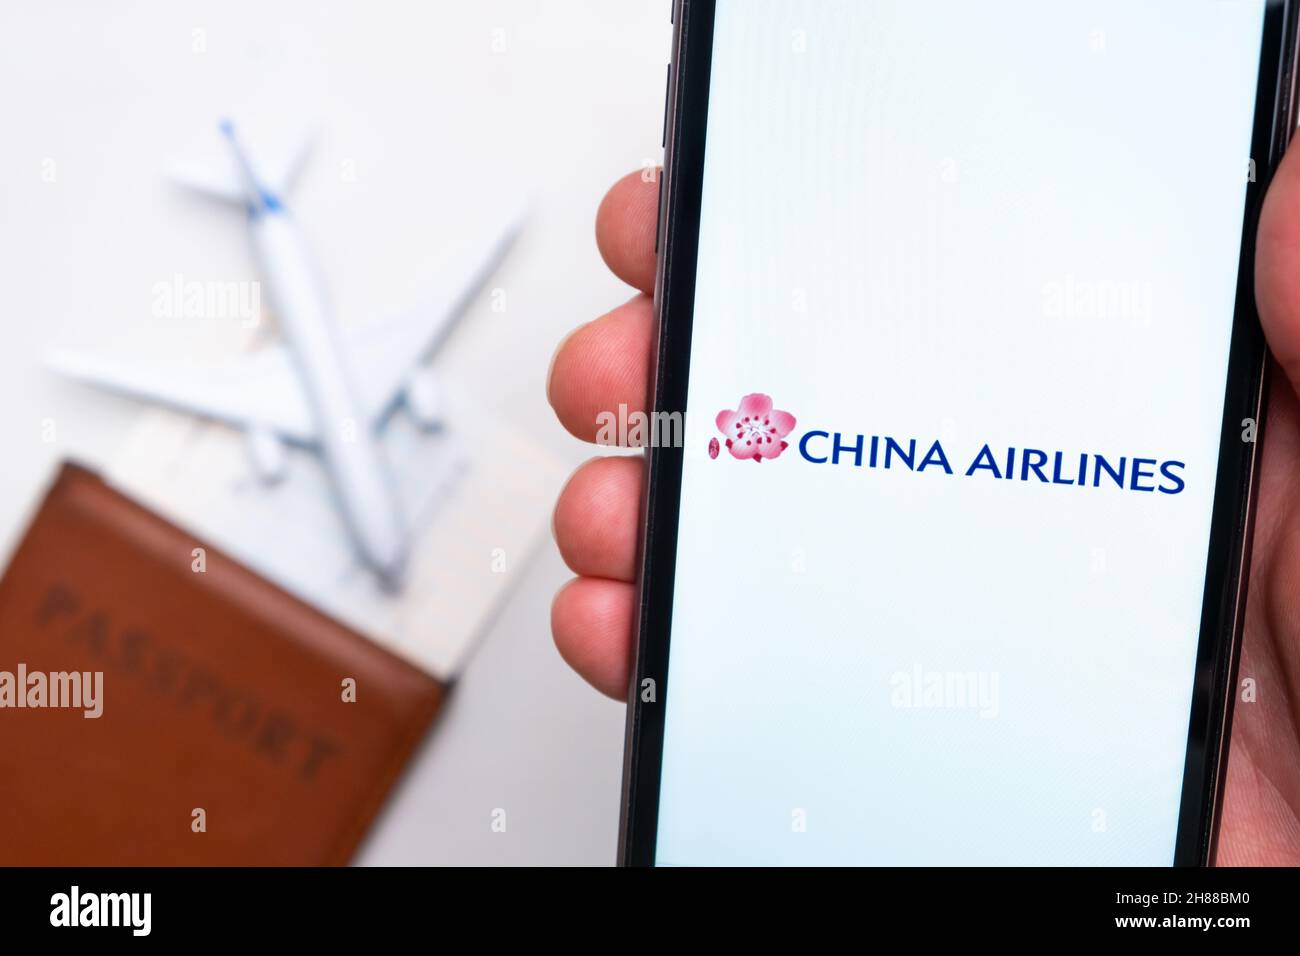 Logo de l'application China Airlines sur l'écran du téléphone portable.Image floue d'un avion, d'un passeport et d'une carte d'embarquement en arrière-plan.Novembre 2021, San Francisco, États-Unis Banque D'Images